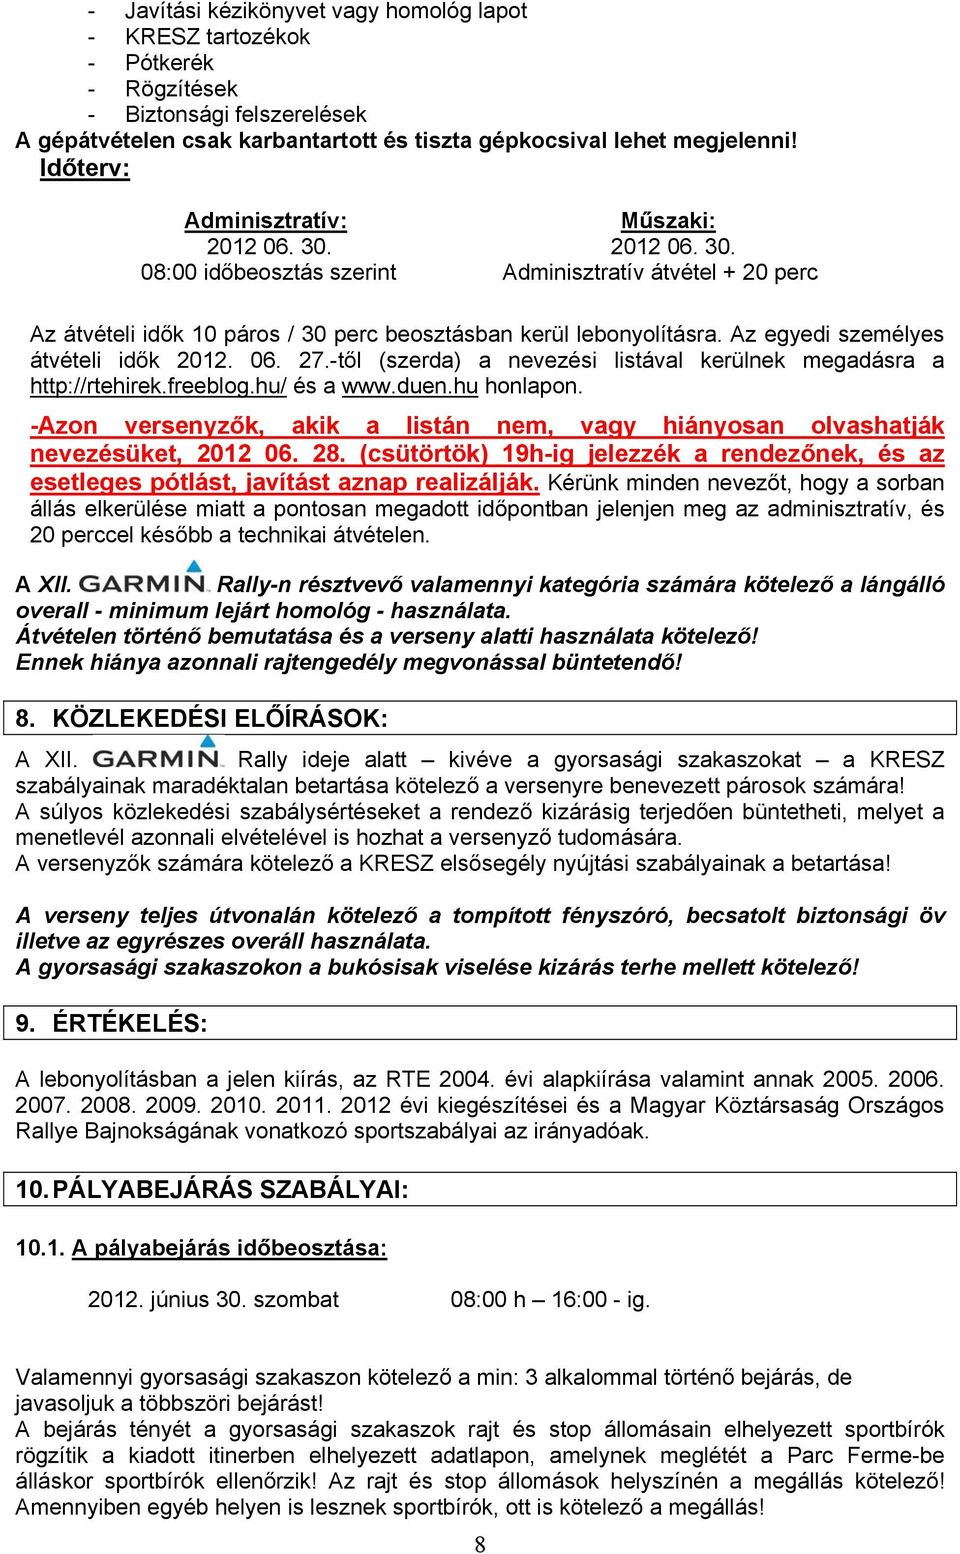 Az egyedi személyes átvételi idők 2012. 06. 27.-től (szerda) a nevezési listával kerülnek megadásra a http://rtehirek.freeblog.hu/ és a www.duen.hu honlapon.